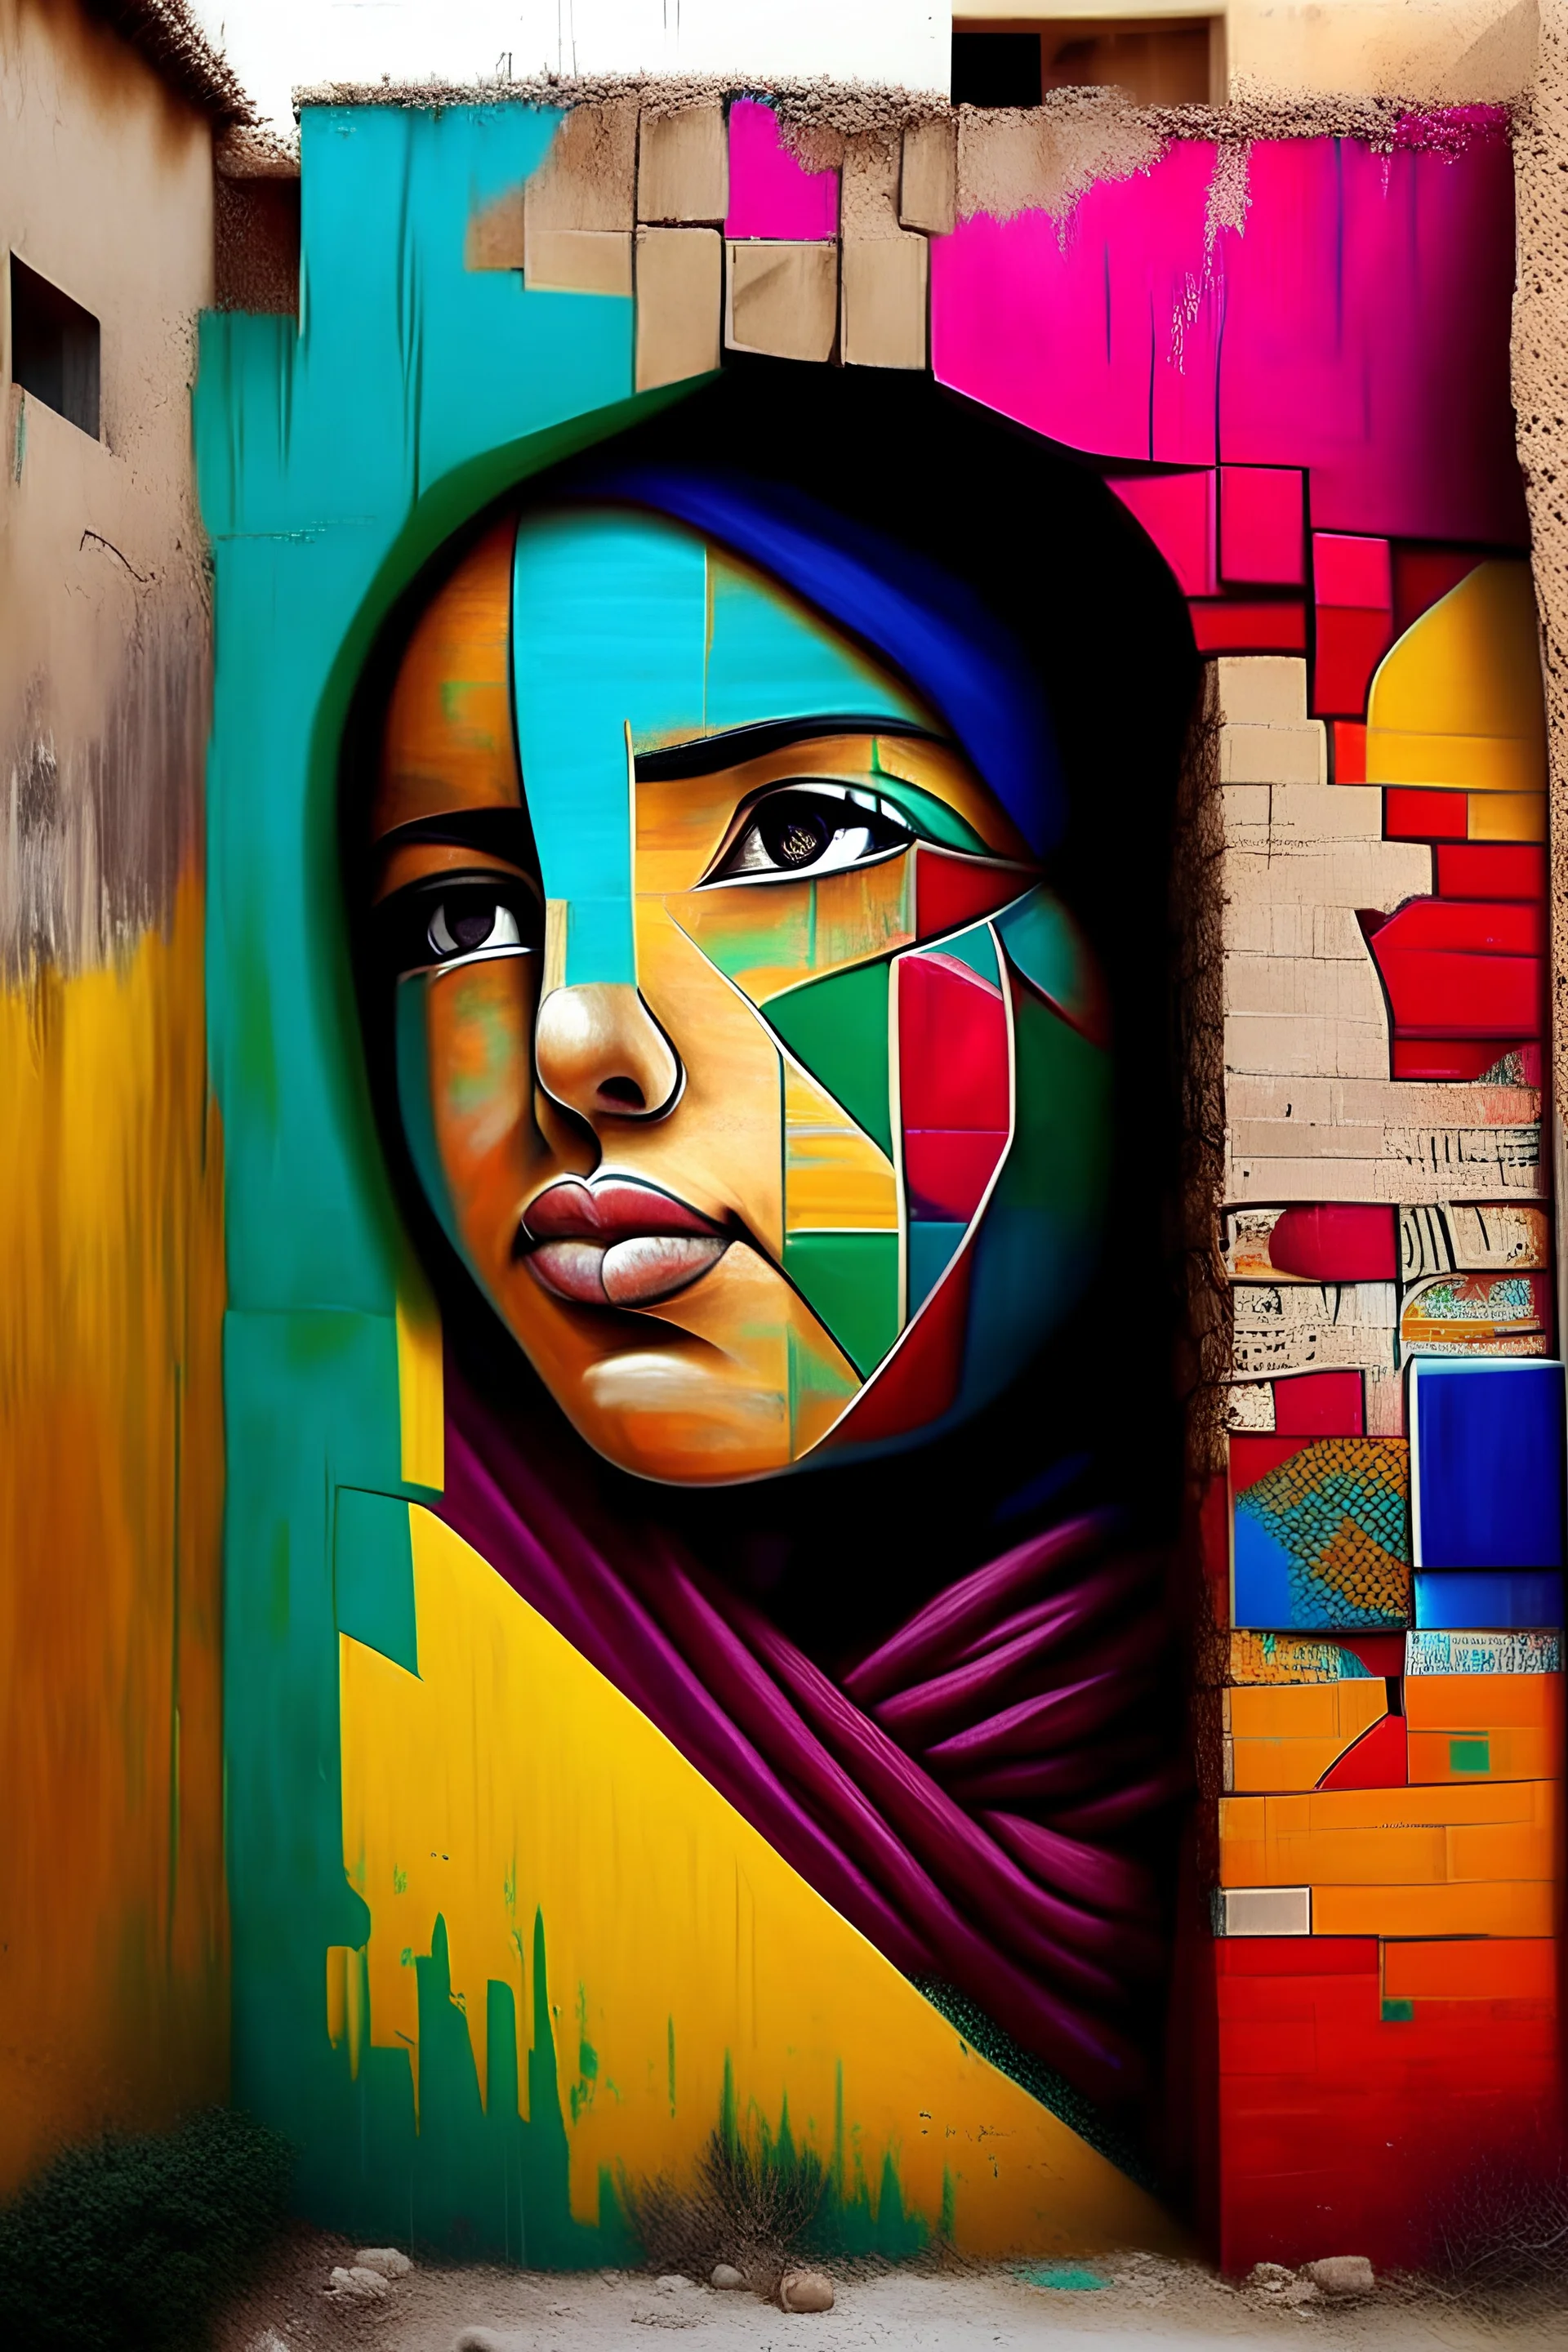 فن شوارع ، رسم على الجدار ، الوان فاقعة ، فلسطين ، جدار ، واقعي ، ، غاية في الدقة والجمال والابداع والتميز ، قوي ، صحيح ، دقيق ، واقعي